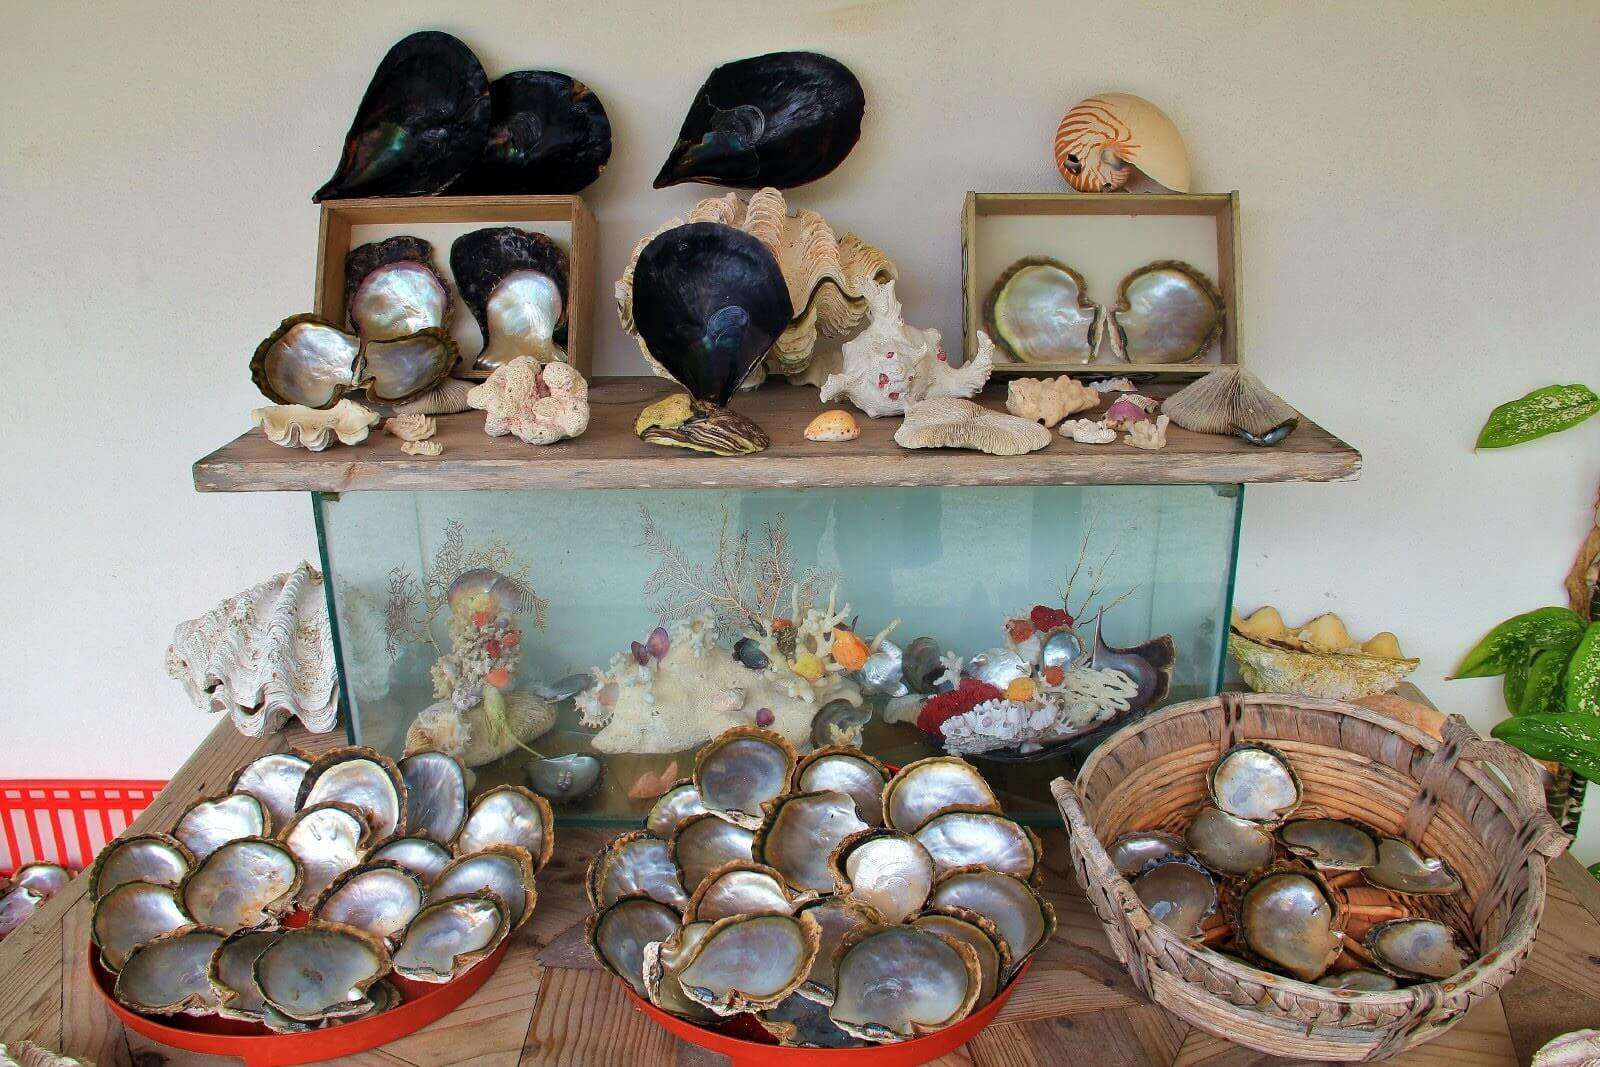 Seychelles souvenirs